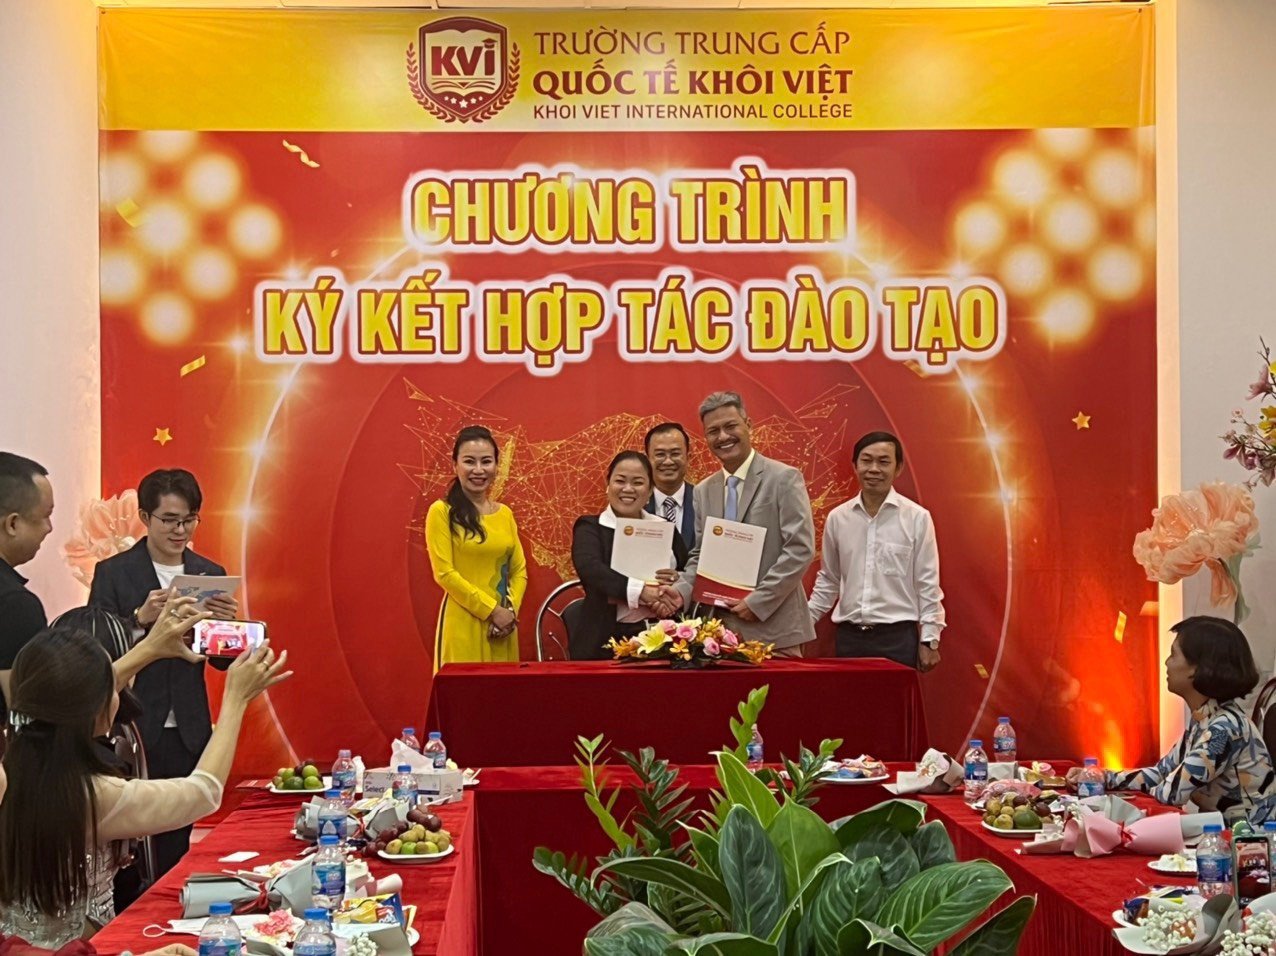 Thủy Tiên Beauty ký kết hợp tác đào tạo với trường Trung Cấp Quốc Tế Khôi Việt